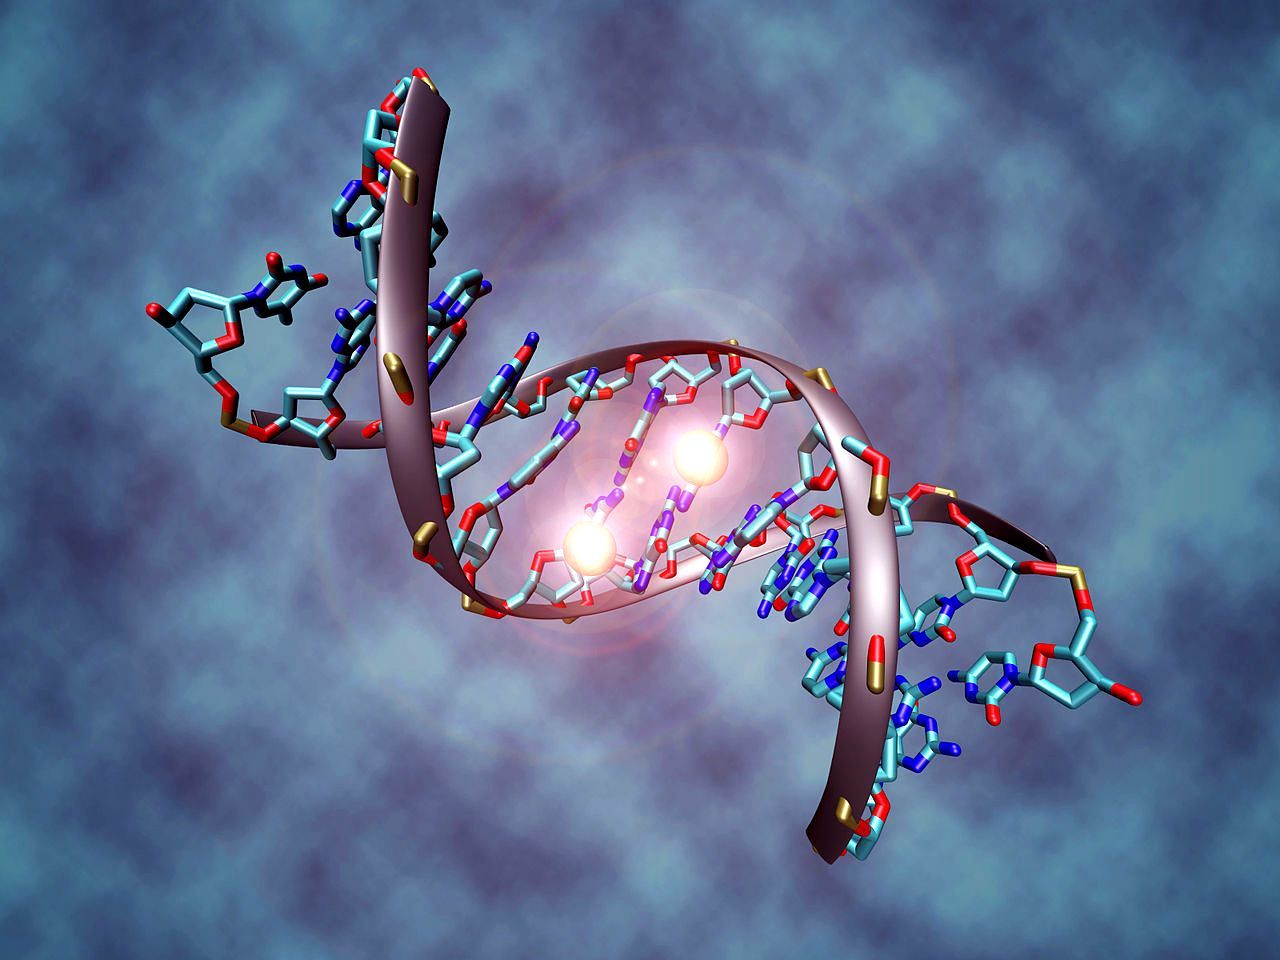 26 keisčiausi faktai apie DNR ir genus, apie kuriuos niekada negirdėjote 4